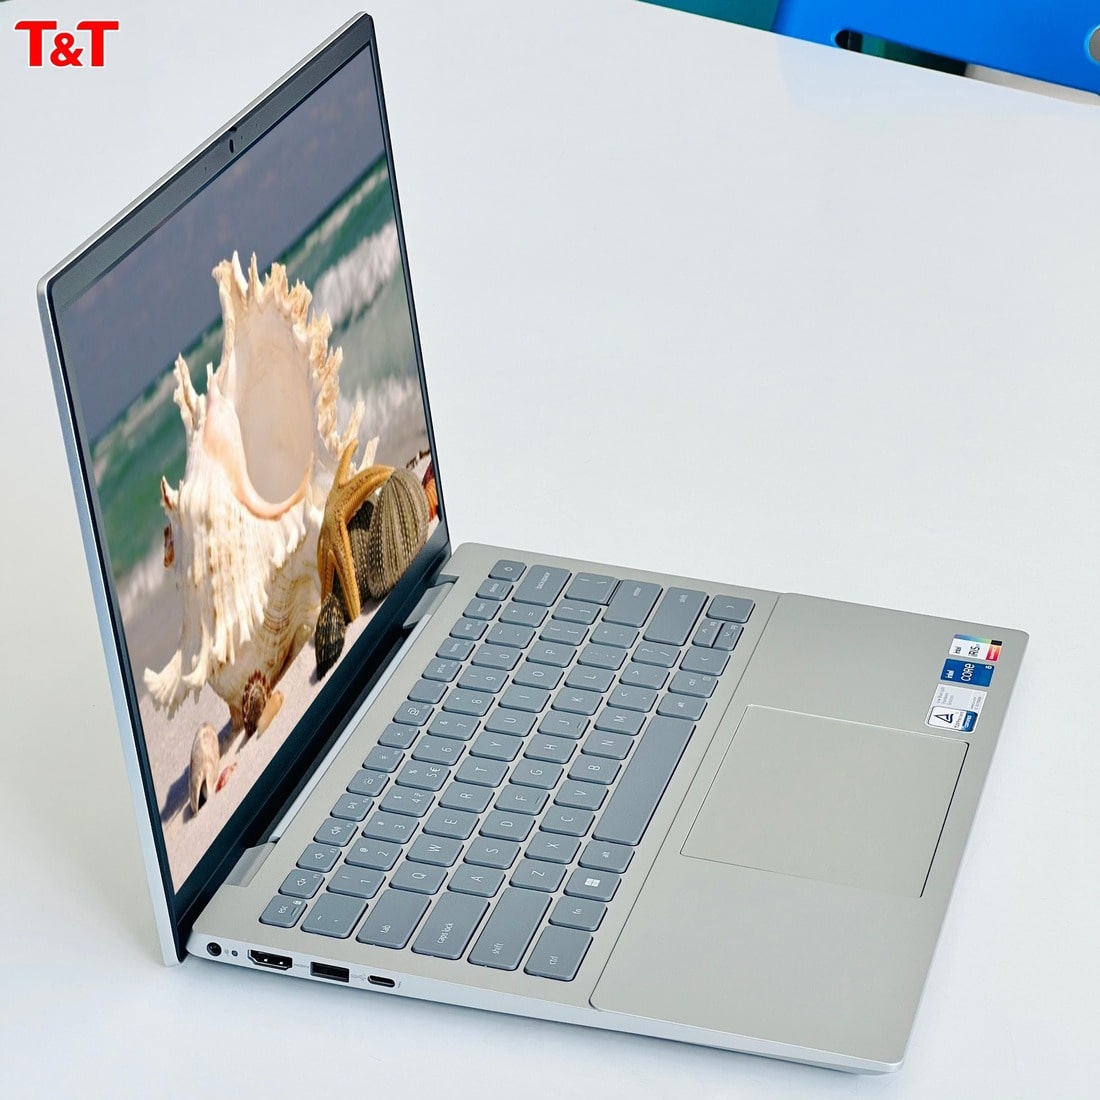 Đánh giá Dell Inspiron 5430-R1808S - Laptop văn phòng thiết kế đột phá